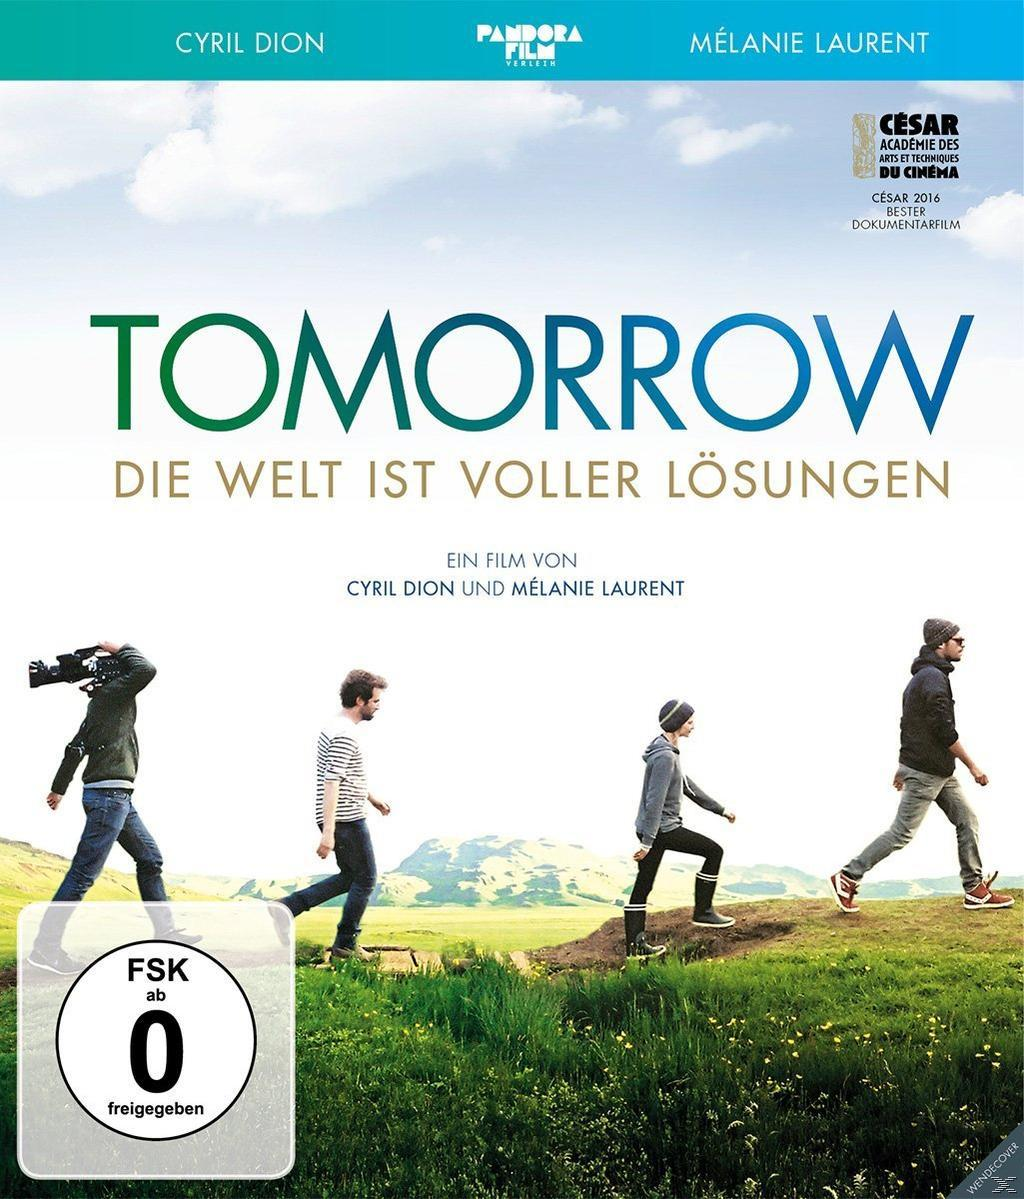 Lösungen - Blu-ray voller Tomorrow Welt ist Die